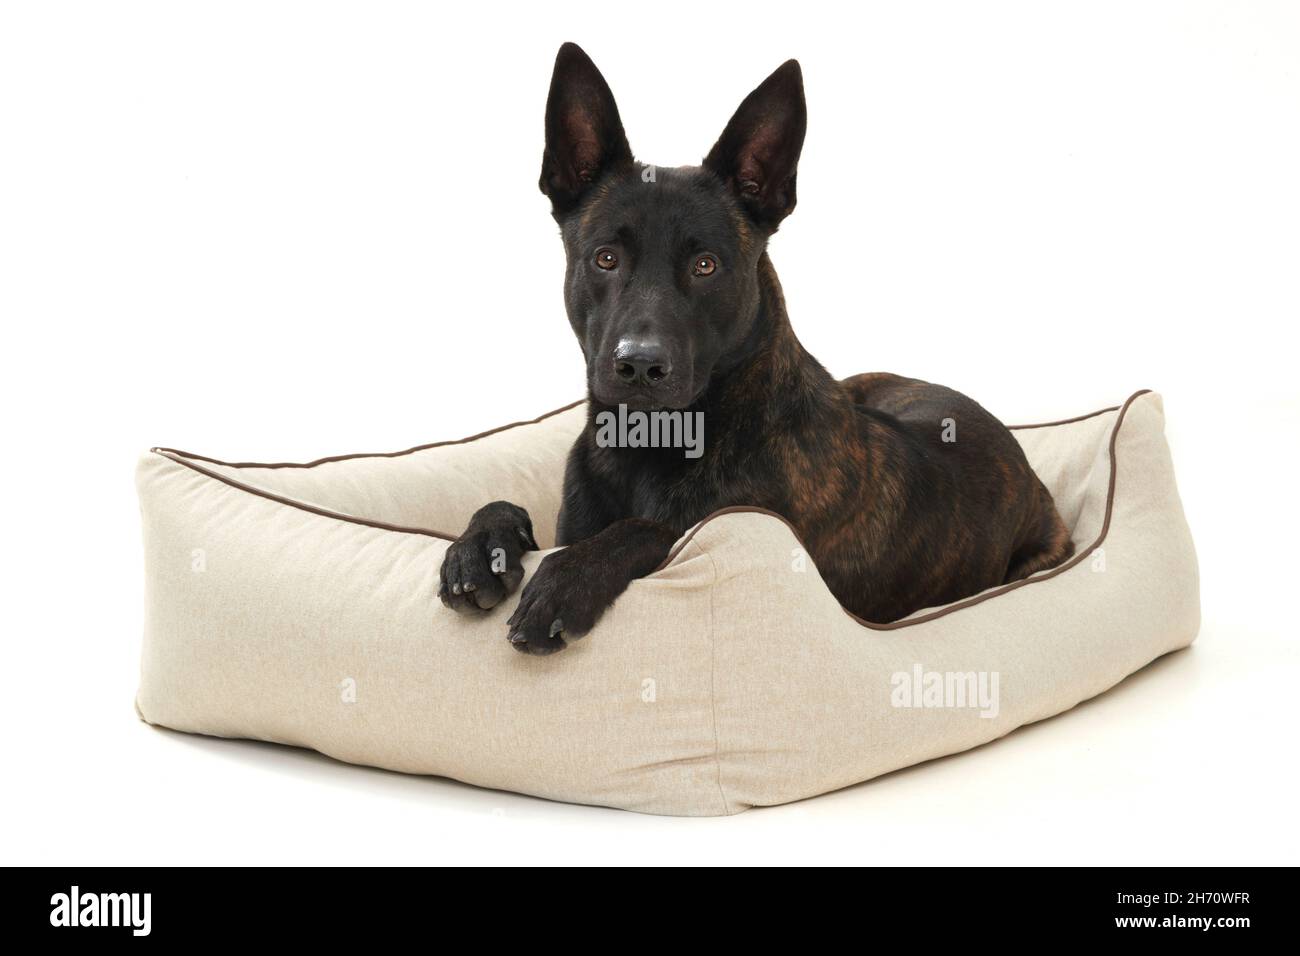 Perro pastor holandés. Un perro adulto yace en una cama para perros. Imagen de estudio sobre fondo blanco. Alemania Foto de stock